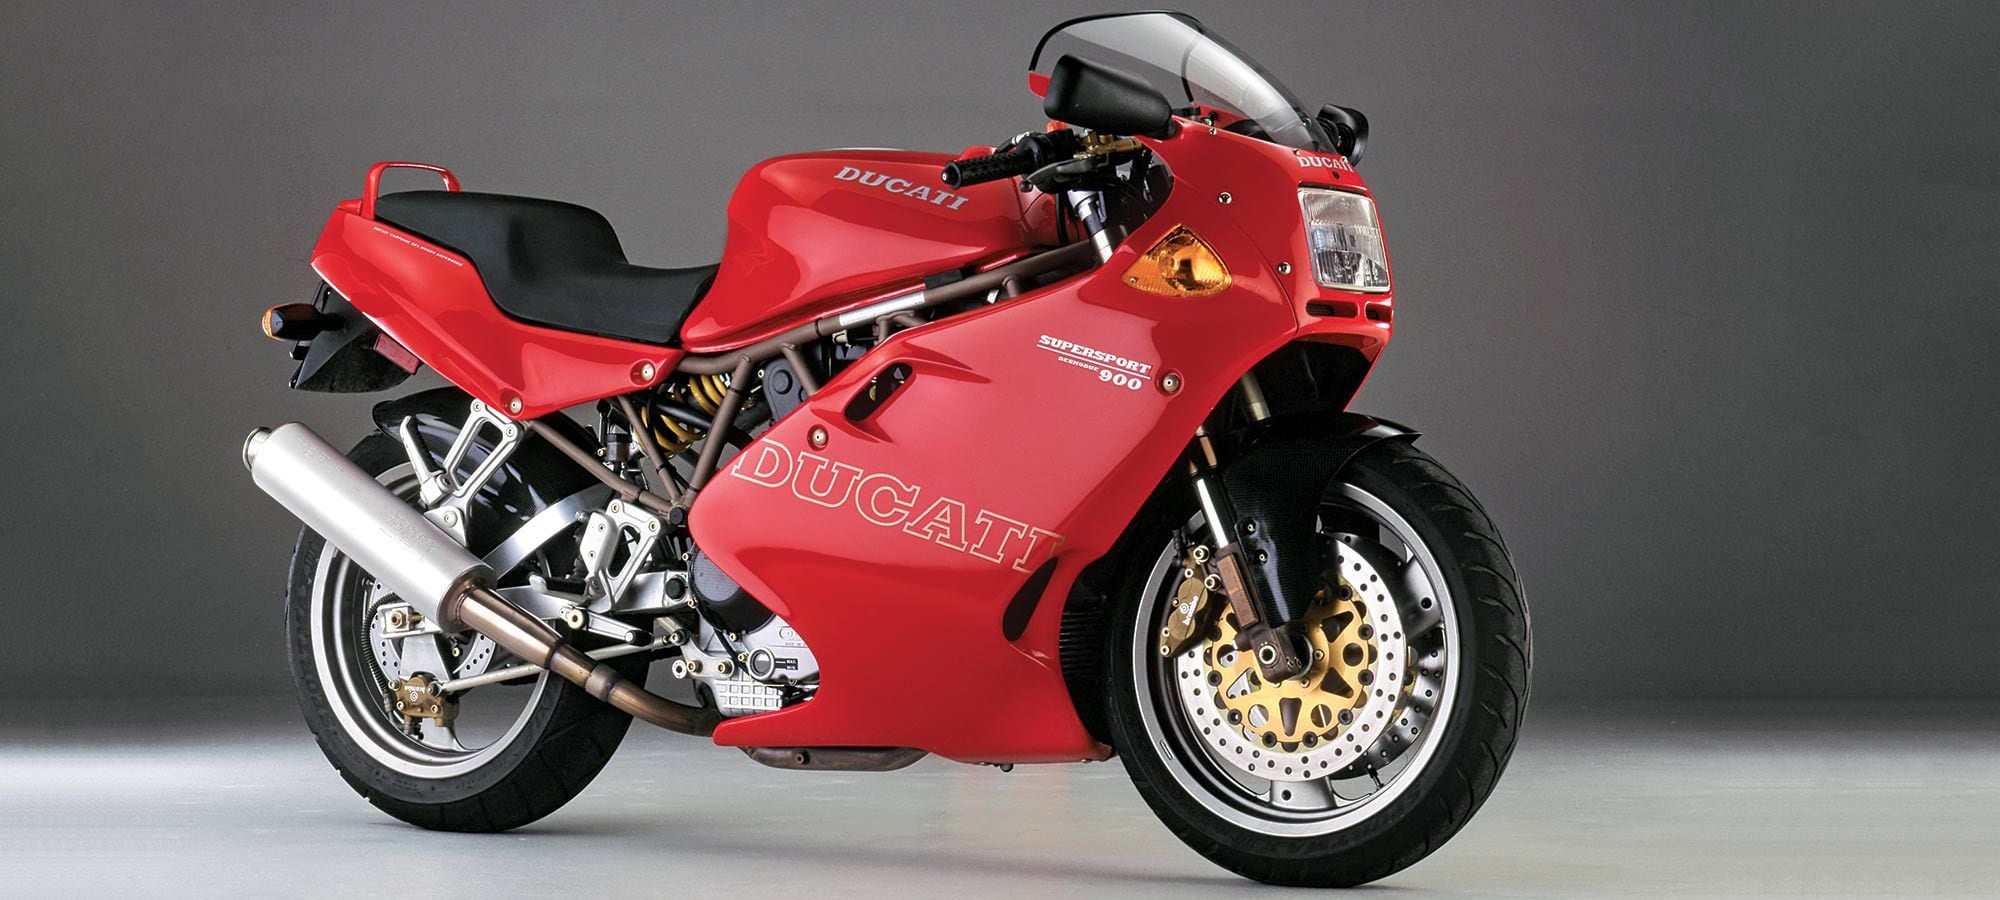 Ducati Supersport 900 SS Ie Nuda 2000 Haynes Service Repair Manual 3290 for sale online 